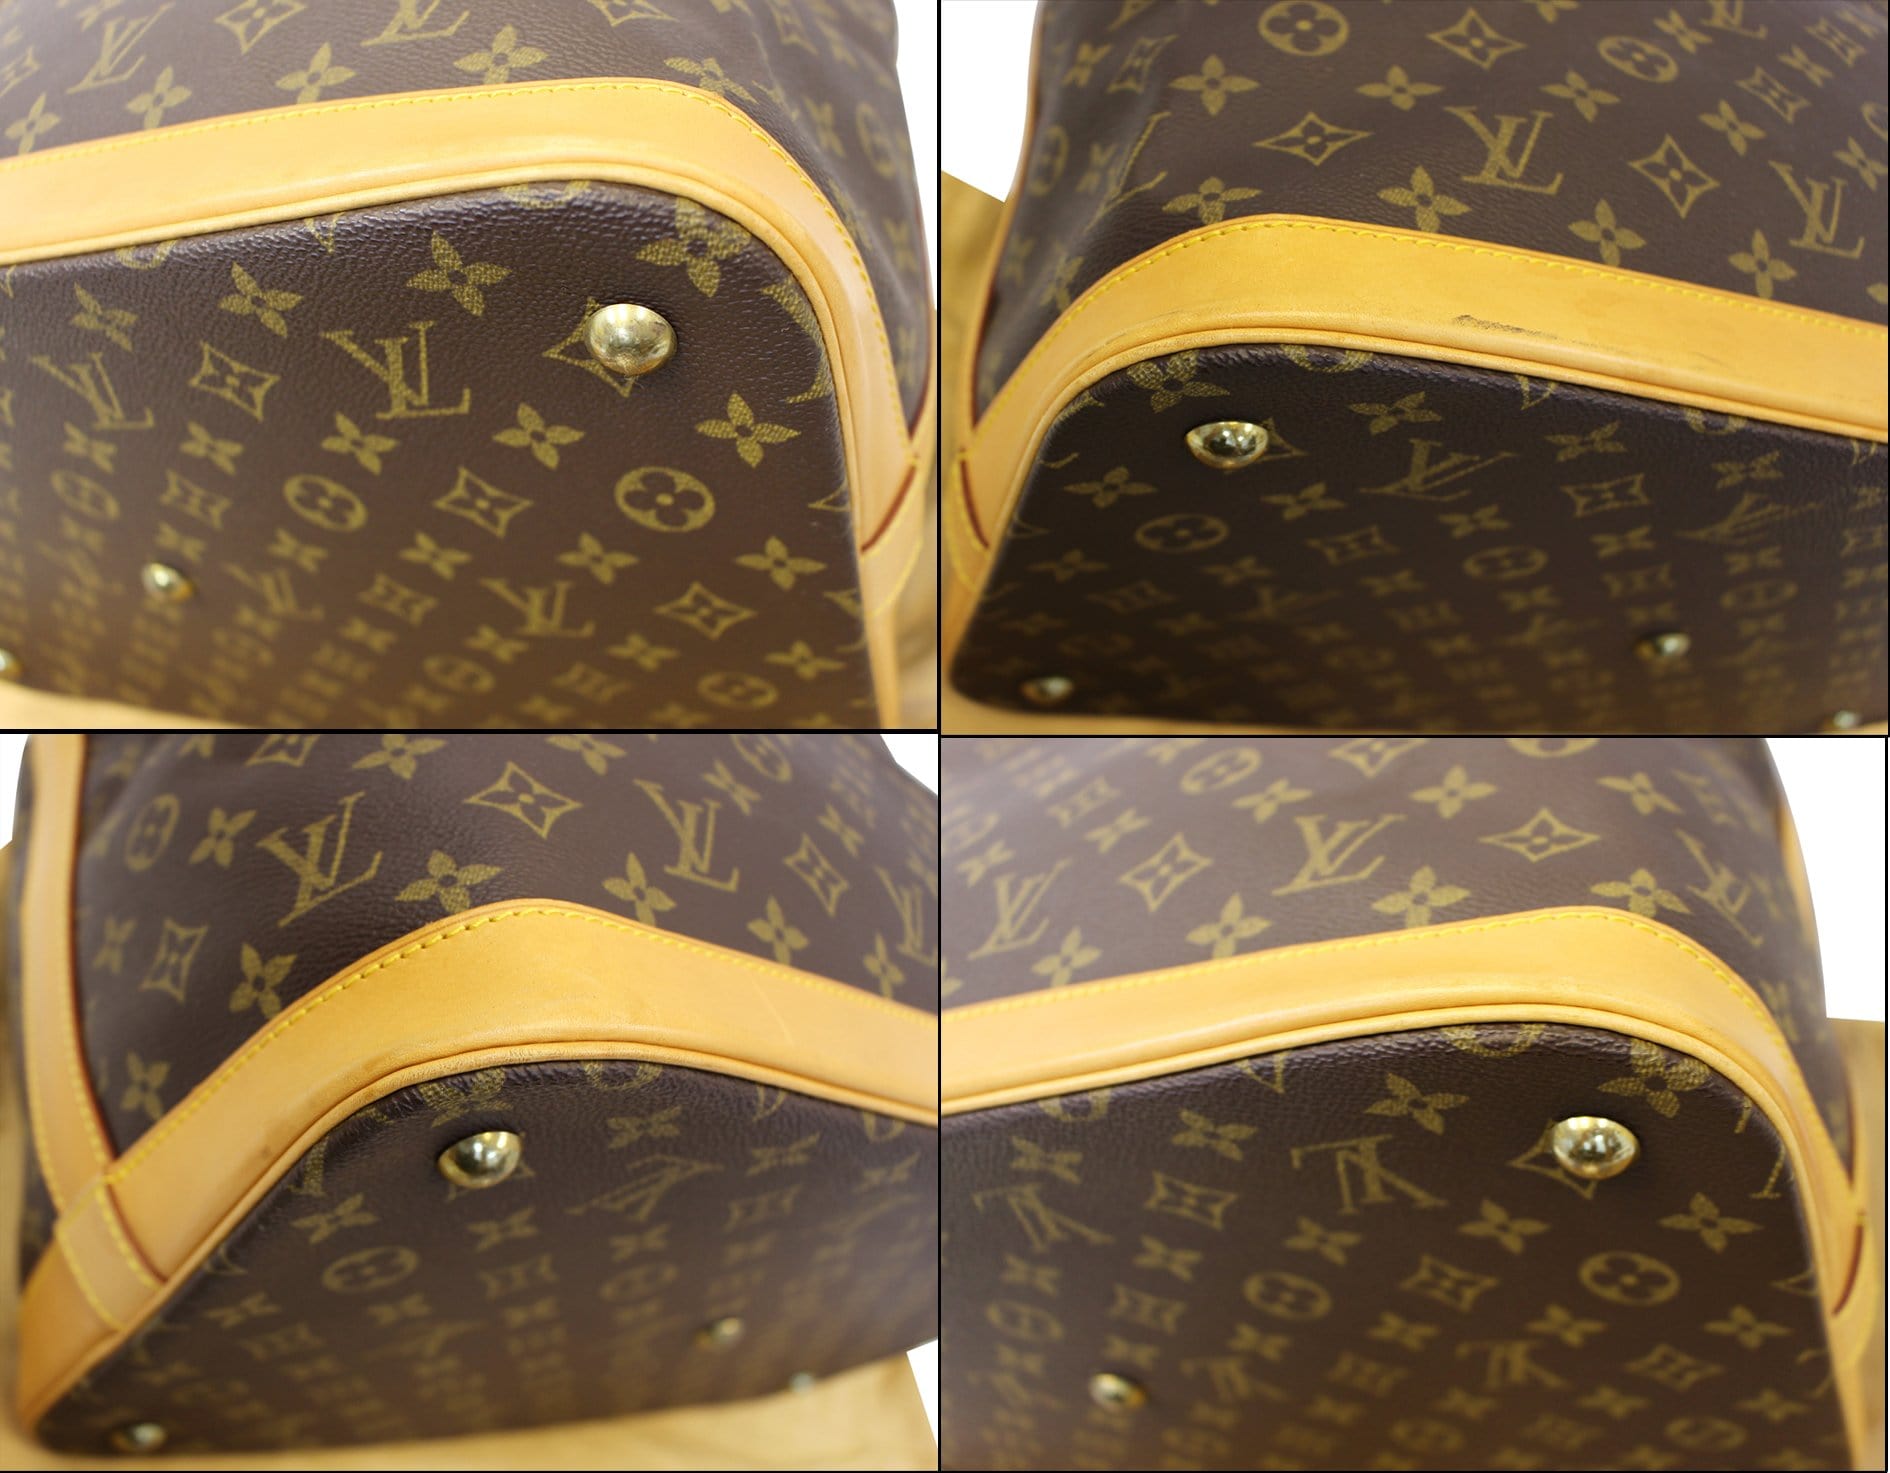 Cruiser cloth travel bag Louis Vuitton Brown in Cloth - 30811406